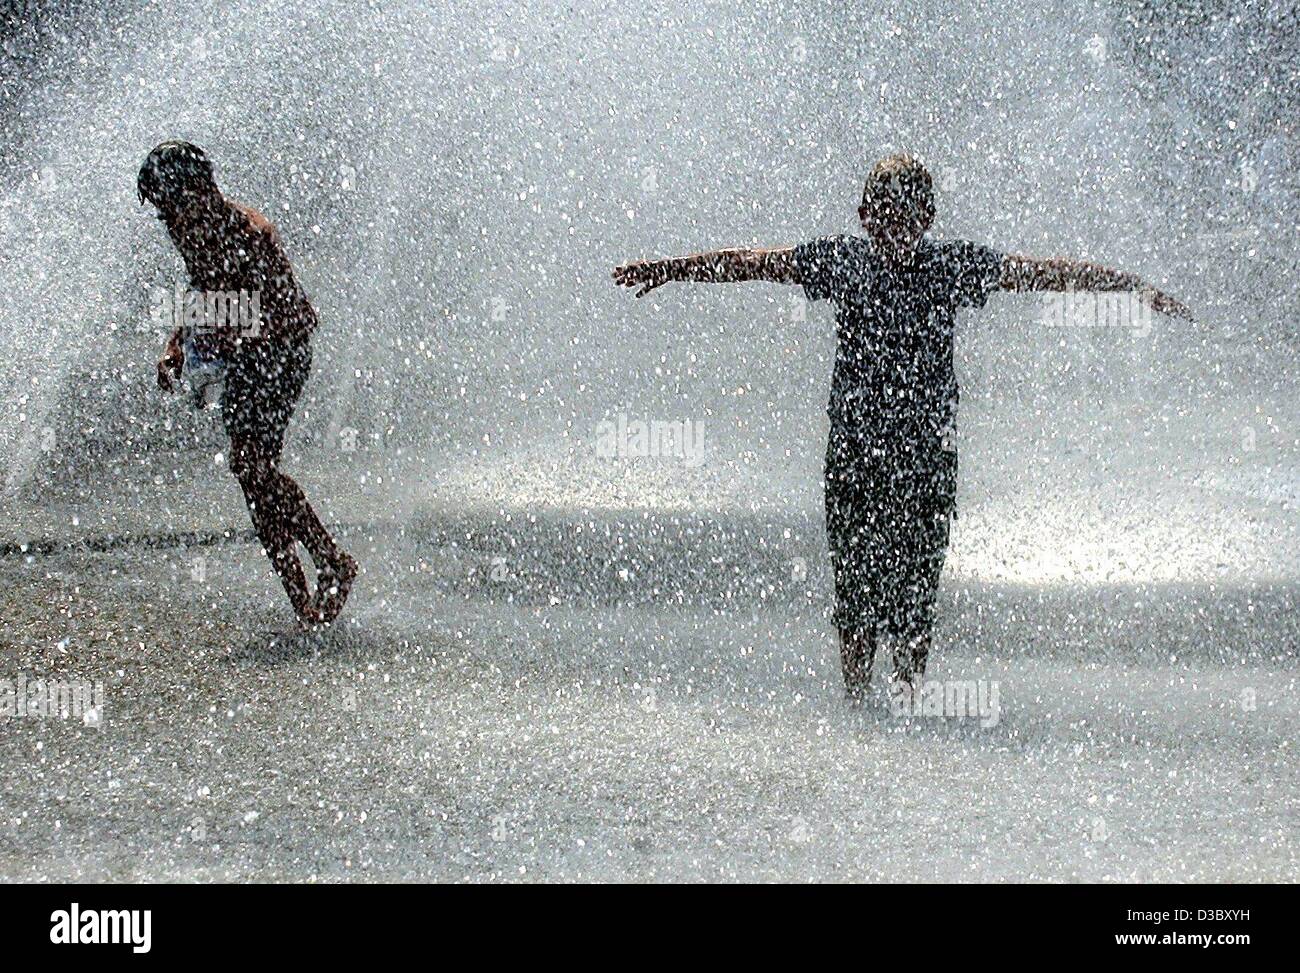 (Dpa) - zwei jungen eine kalte Dusche nehmen in den Stachus-Brunnen in München, 5. August 2003. Temperaturen in München haben 36 Grad Celsius erreicht. Stockfoto